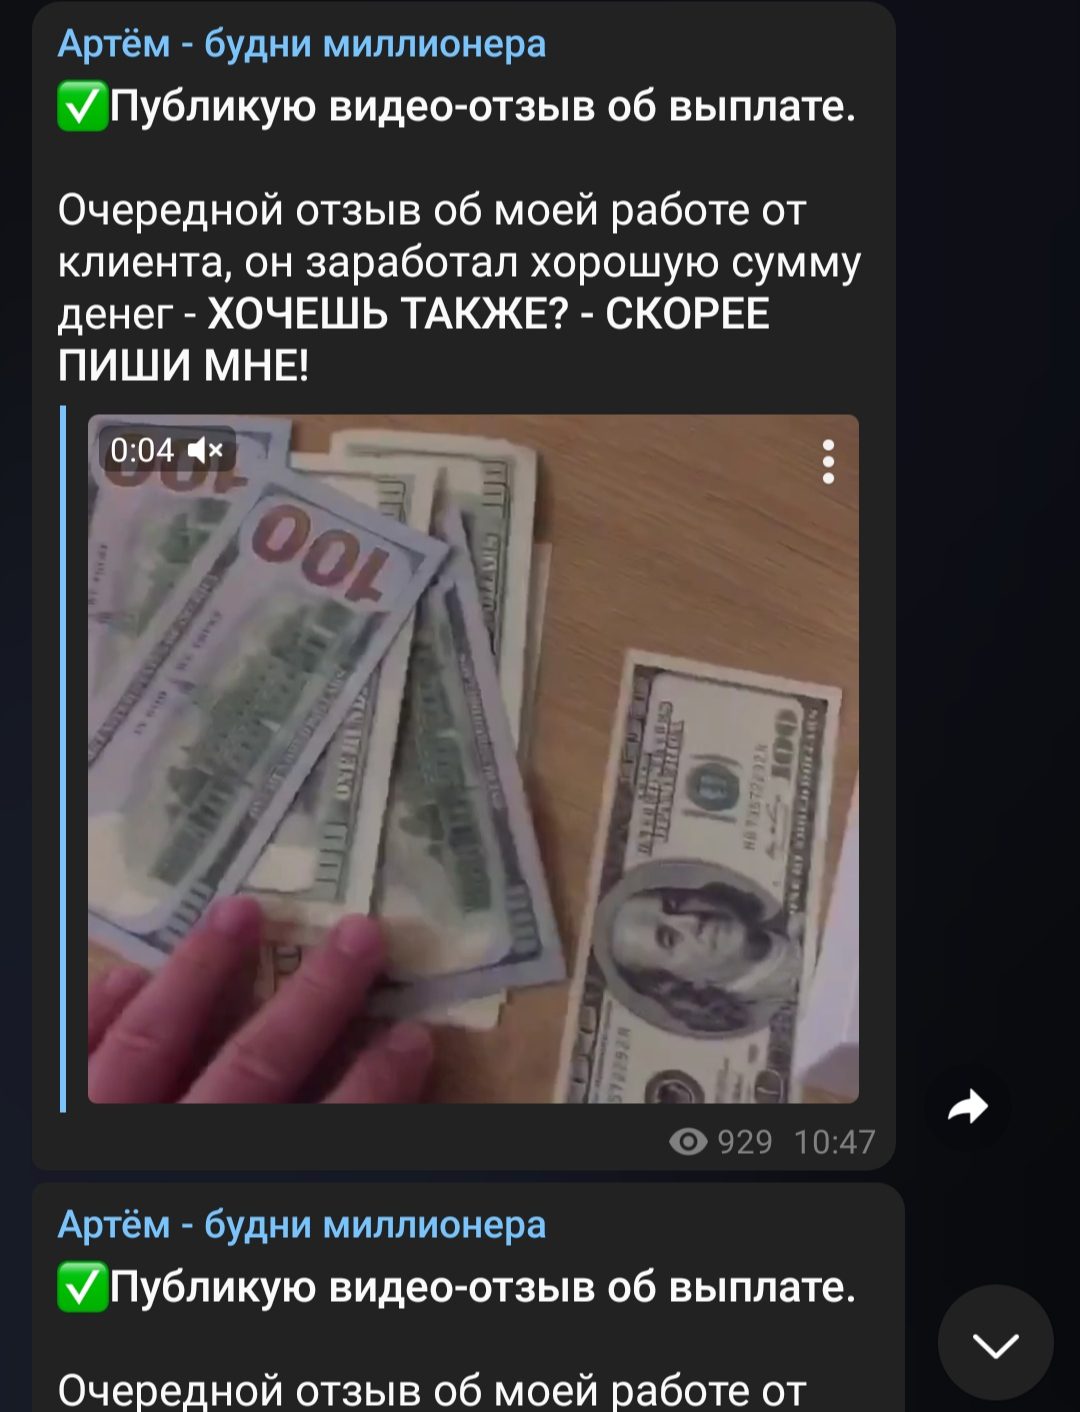 Артём Попков будни миллионера в Телеграмме - демонстрация денег